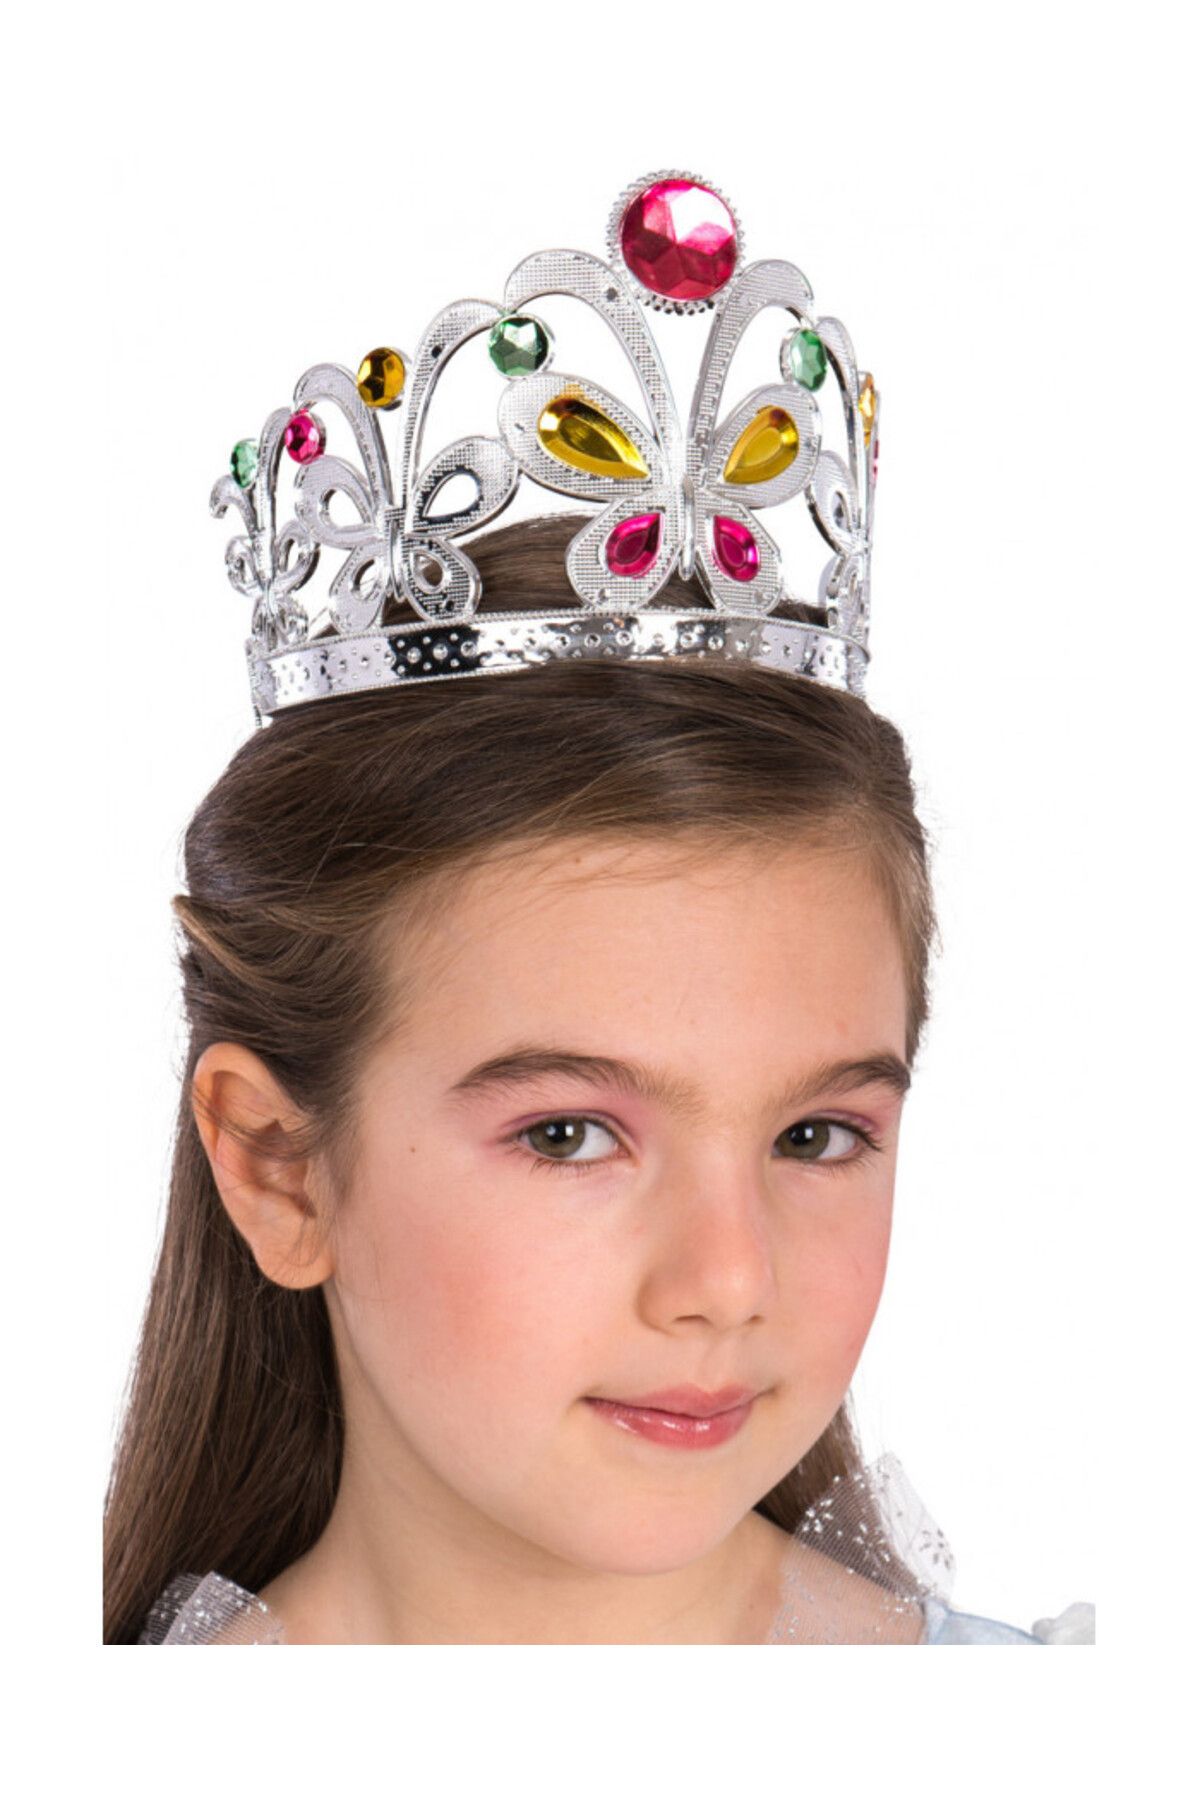 Samur Çocuklar Için Kraliçe Tacı - Çocuk Prenses Tacı Gümüş Renk